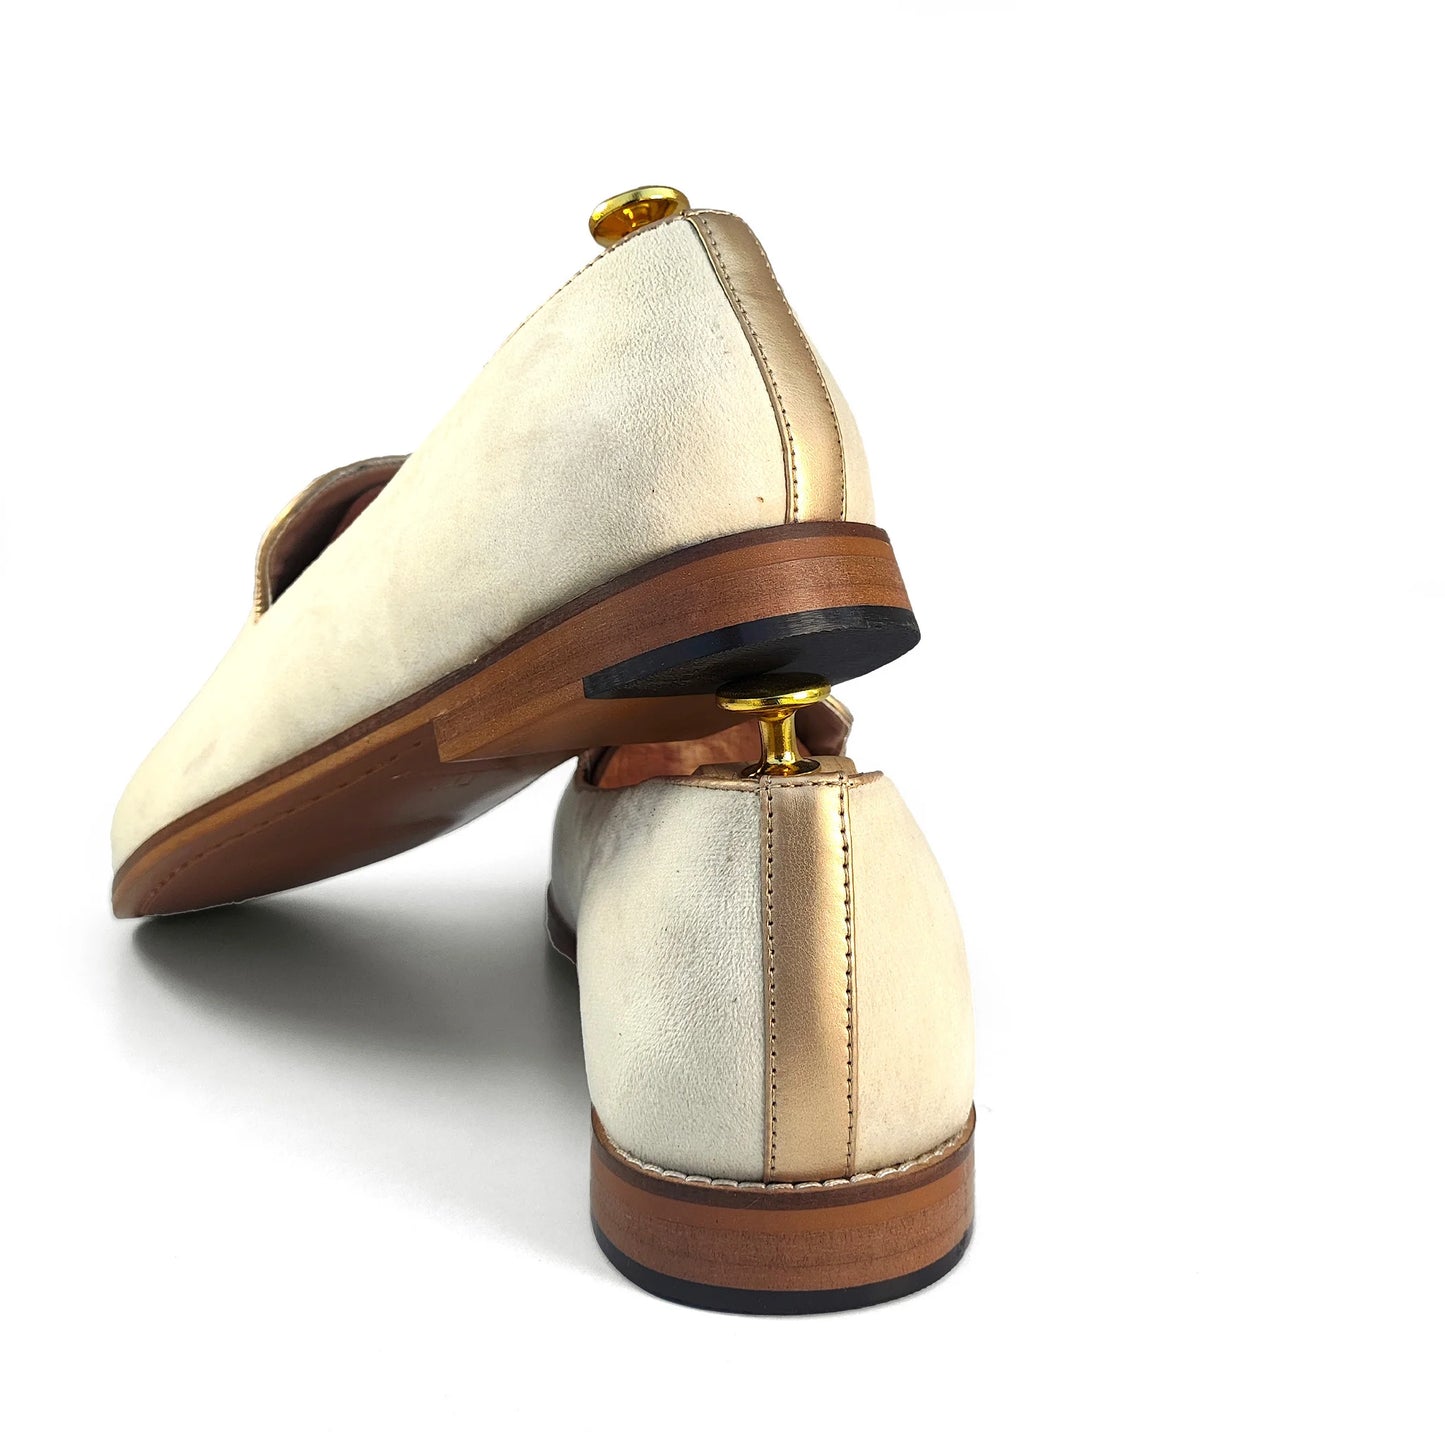 Light Ivory Velvet with Light Gold Zardozi Handwork Wedding Shoes Ethnic Loafers for Men